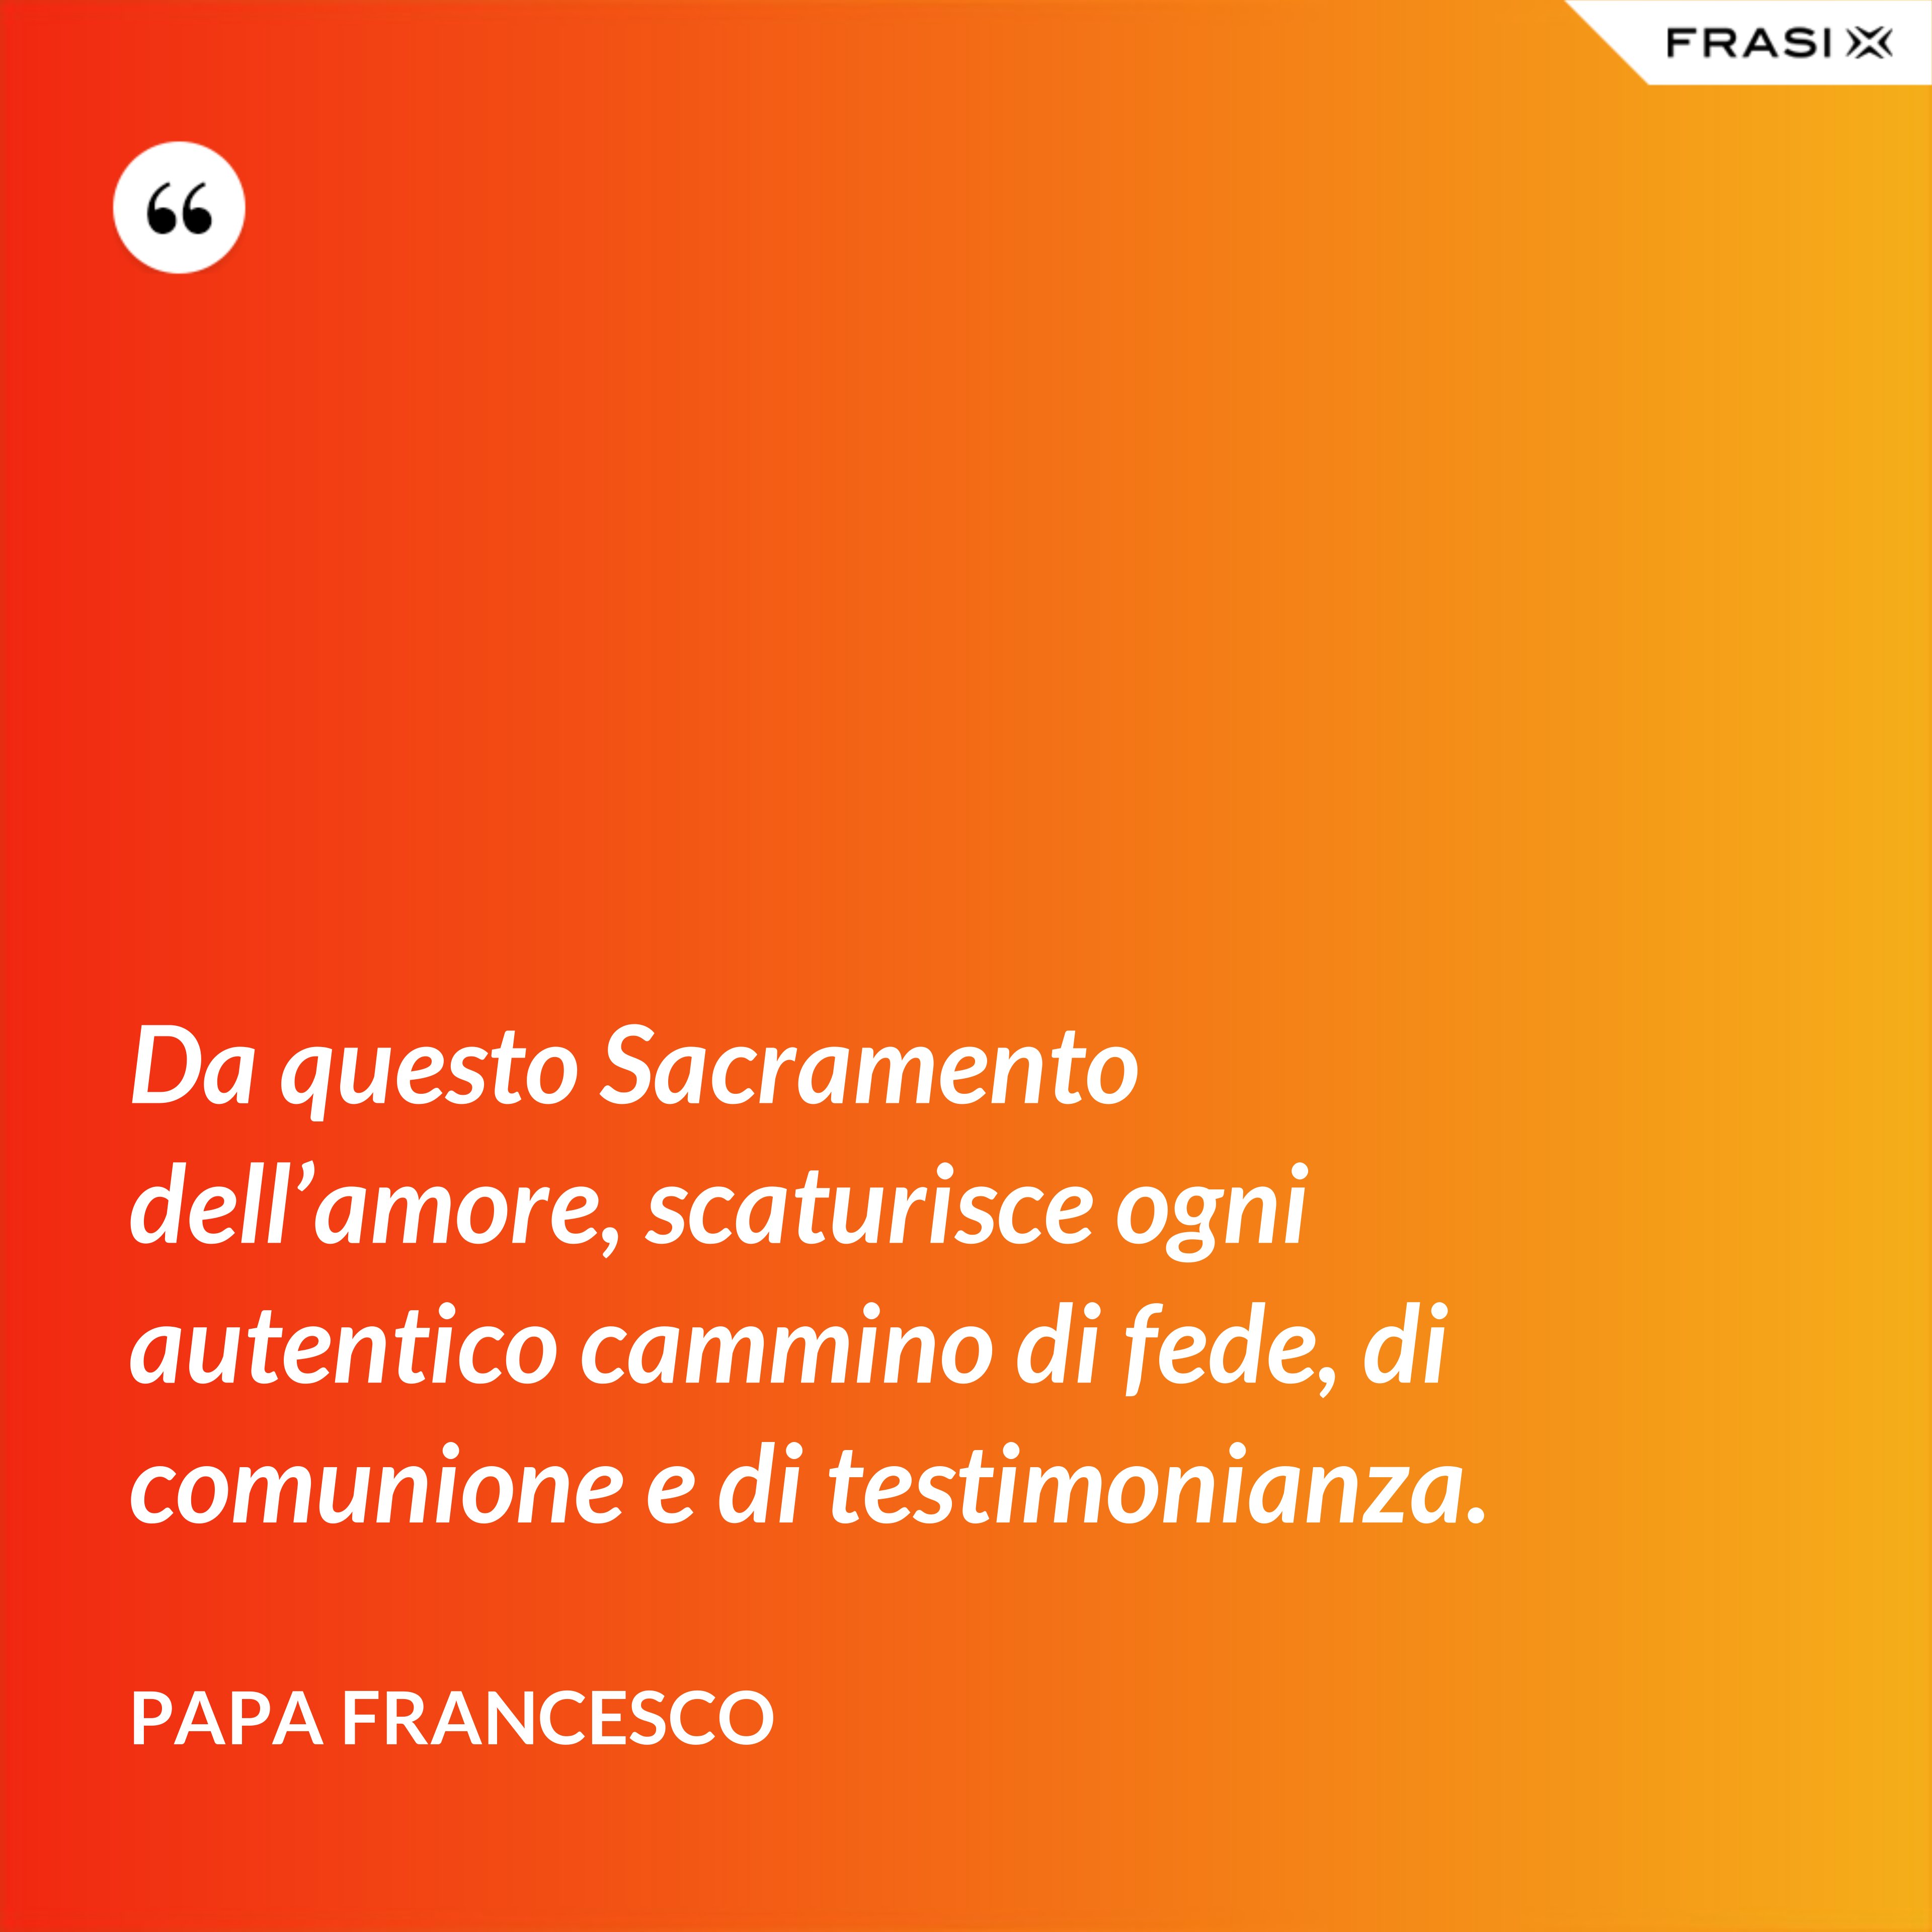 Da questo Sacramento dell’amore, scaturisce ogni autentico cammino di fede, di comunione e di testimonianza. - Papa Francesco